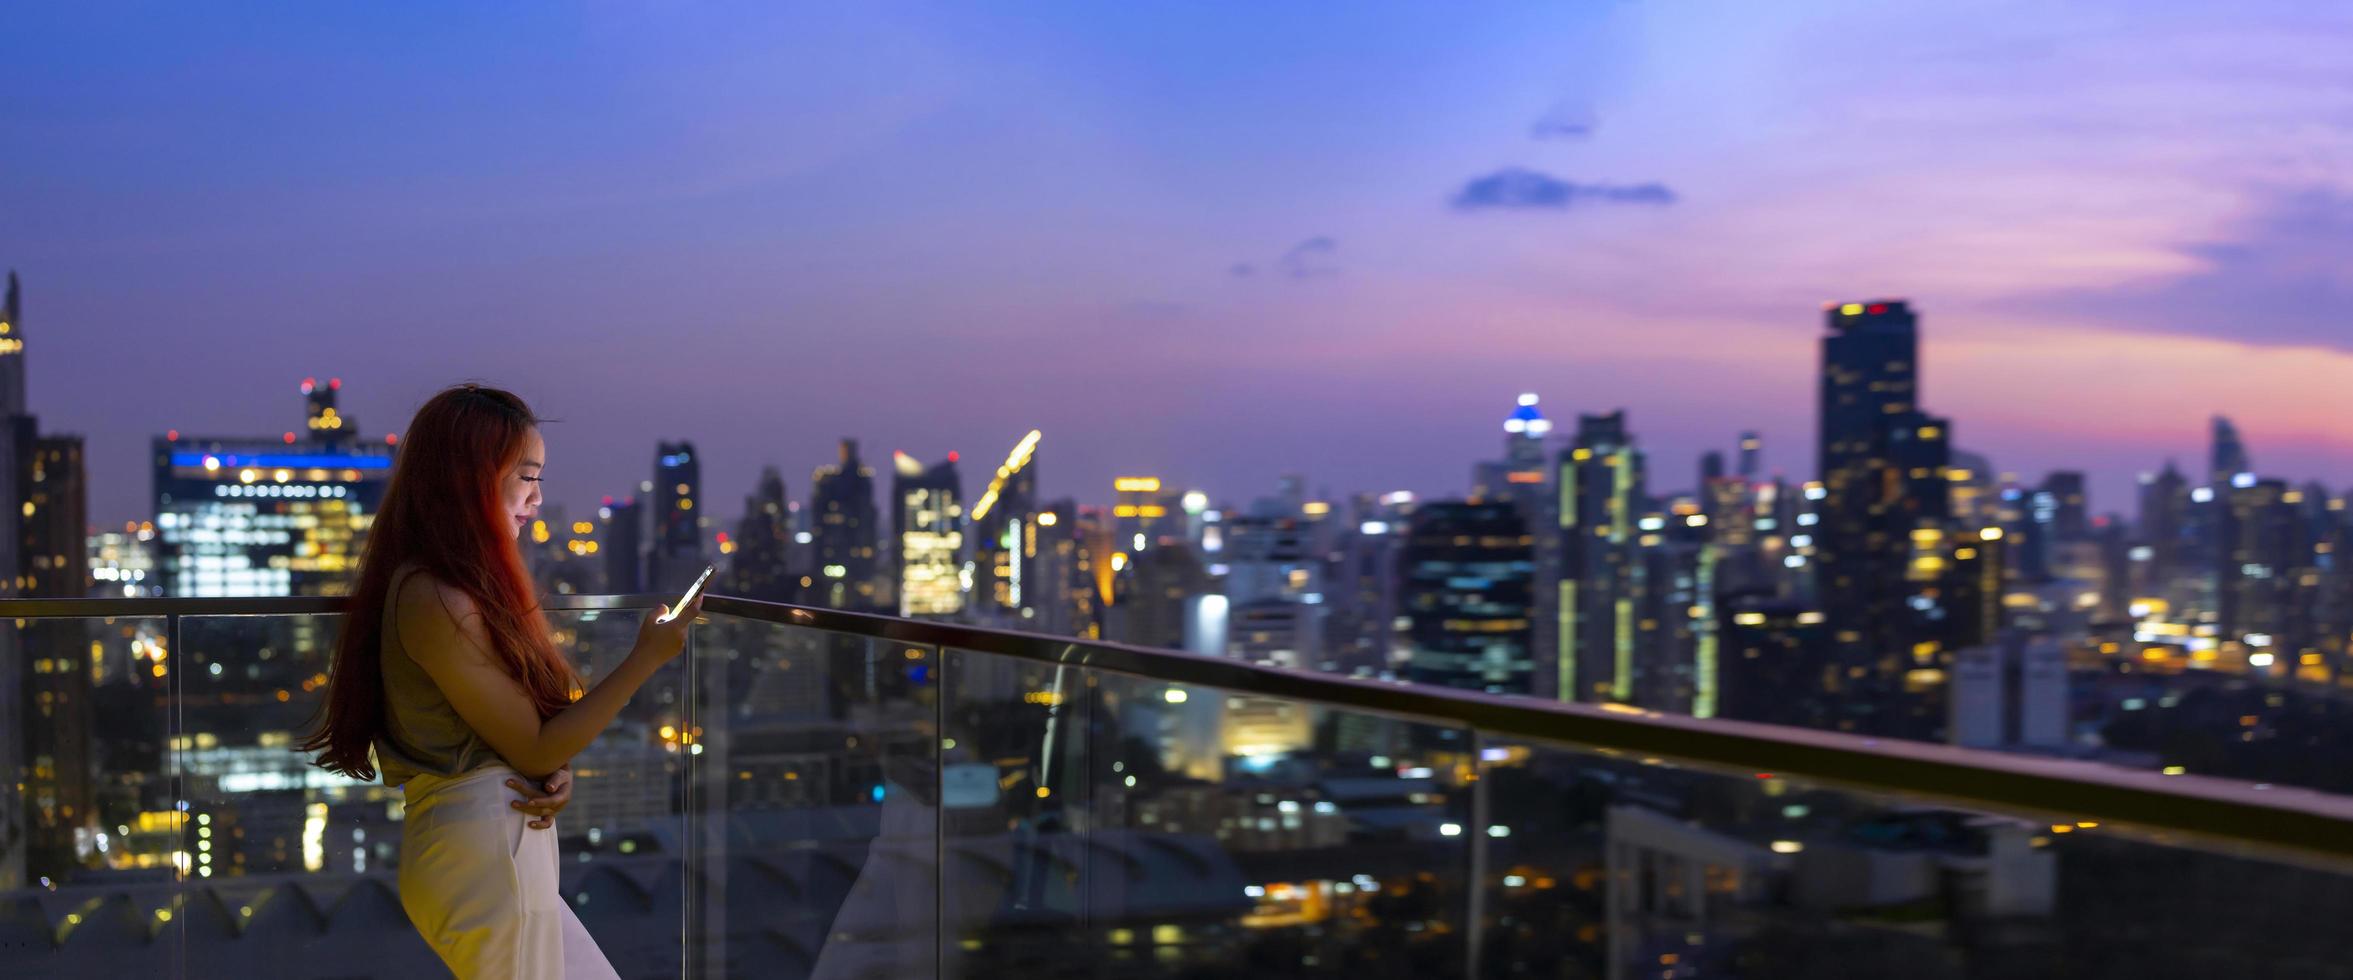 panorama da mulher asiática usando telefone celular com a paisagem urbana de arranha-céus de bangkok na hora azul do pôr do sol no distrito urbano do centro para a vida moderna de luxo e conceito de viagens de prestígio foto